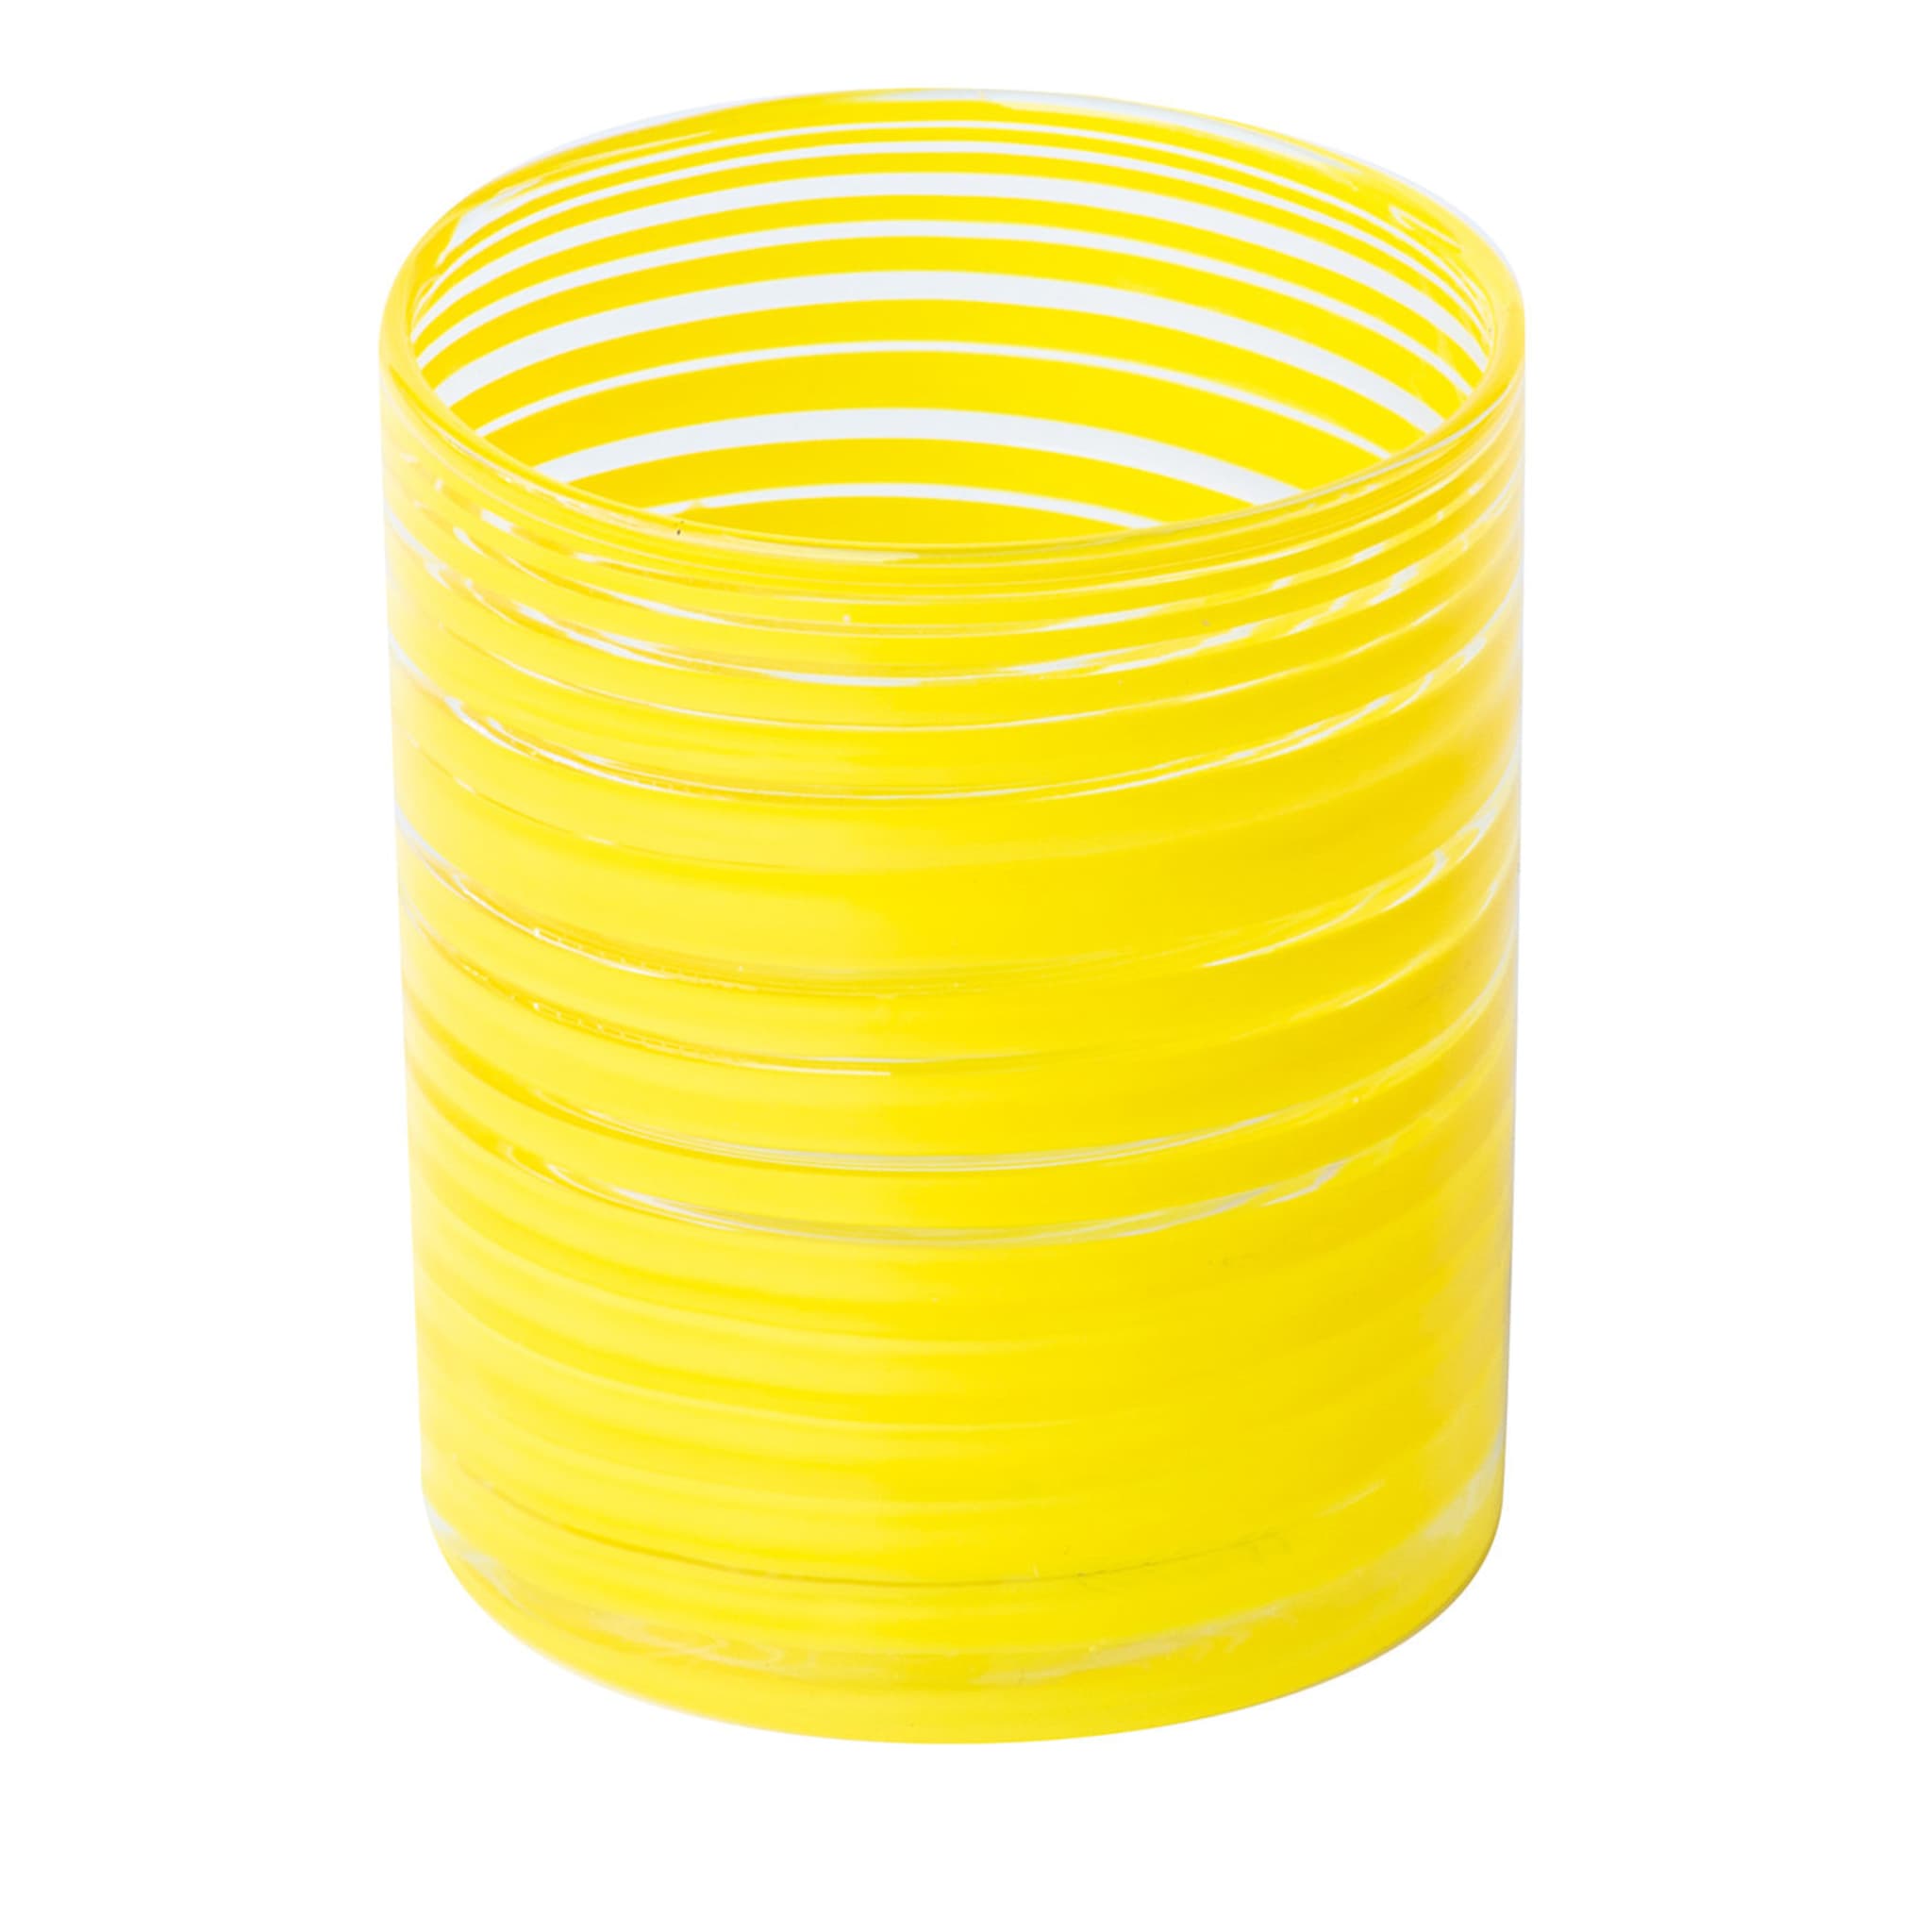 Goti Juego de 6 vasos espirales amarillos - Vista principal